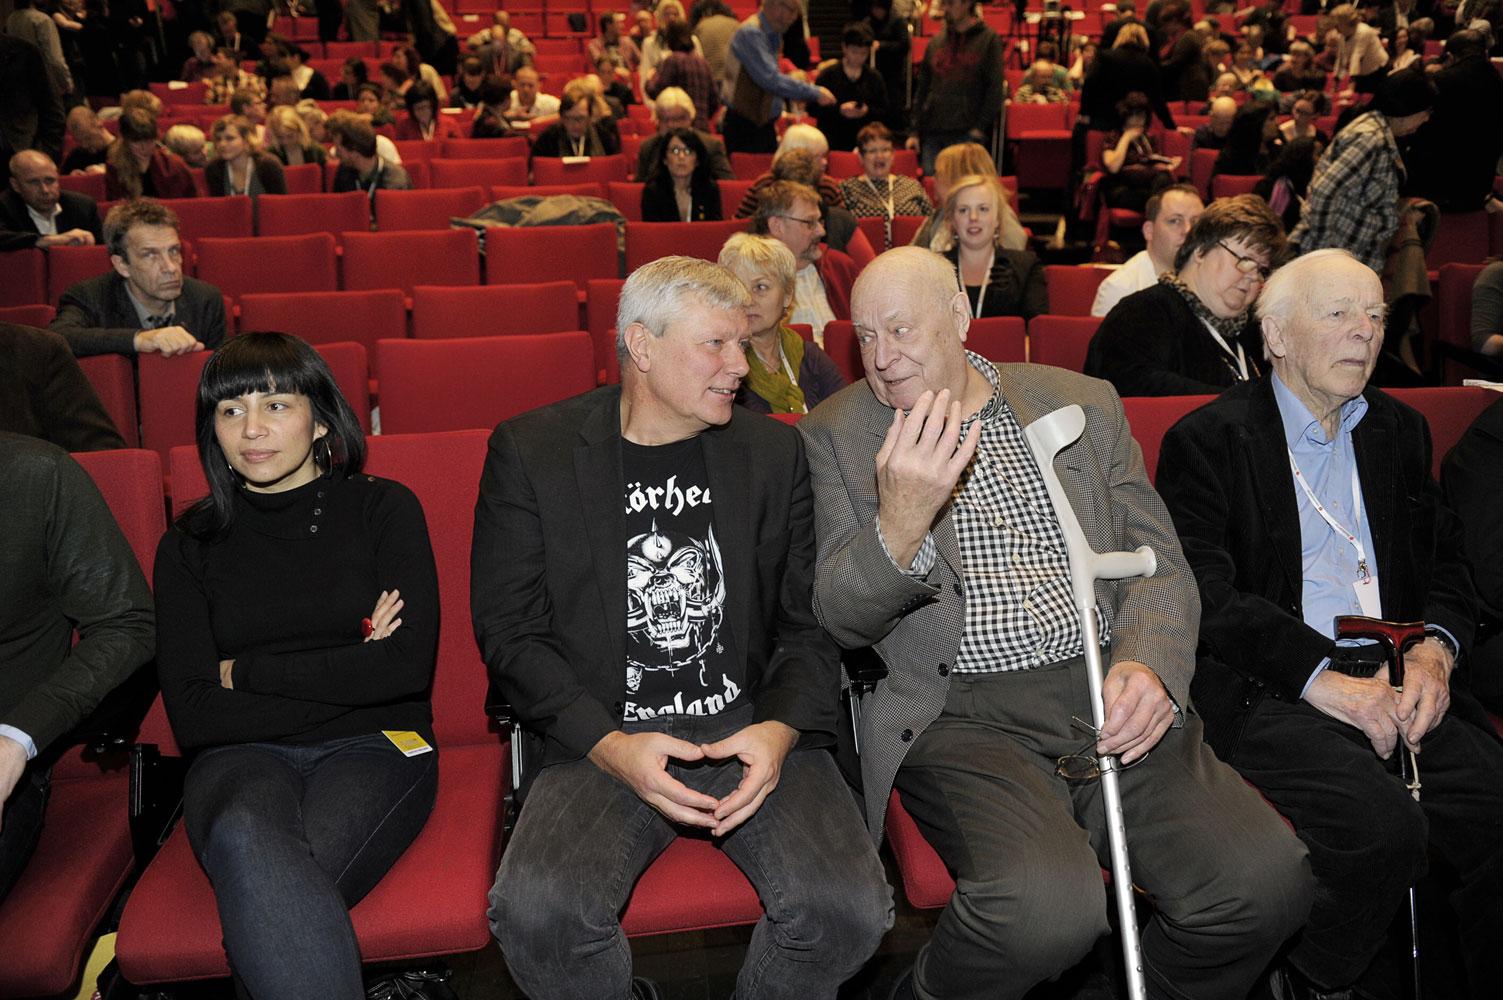 Rossanna Dinamarca, Lars Ohly, Lars Werner och CH Hermansson på Vänsterpartiets kongress 2012.